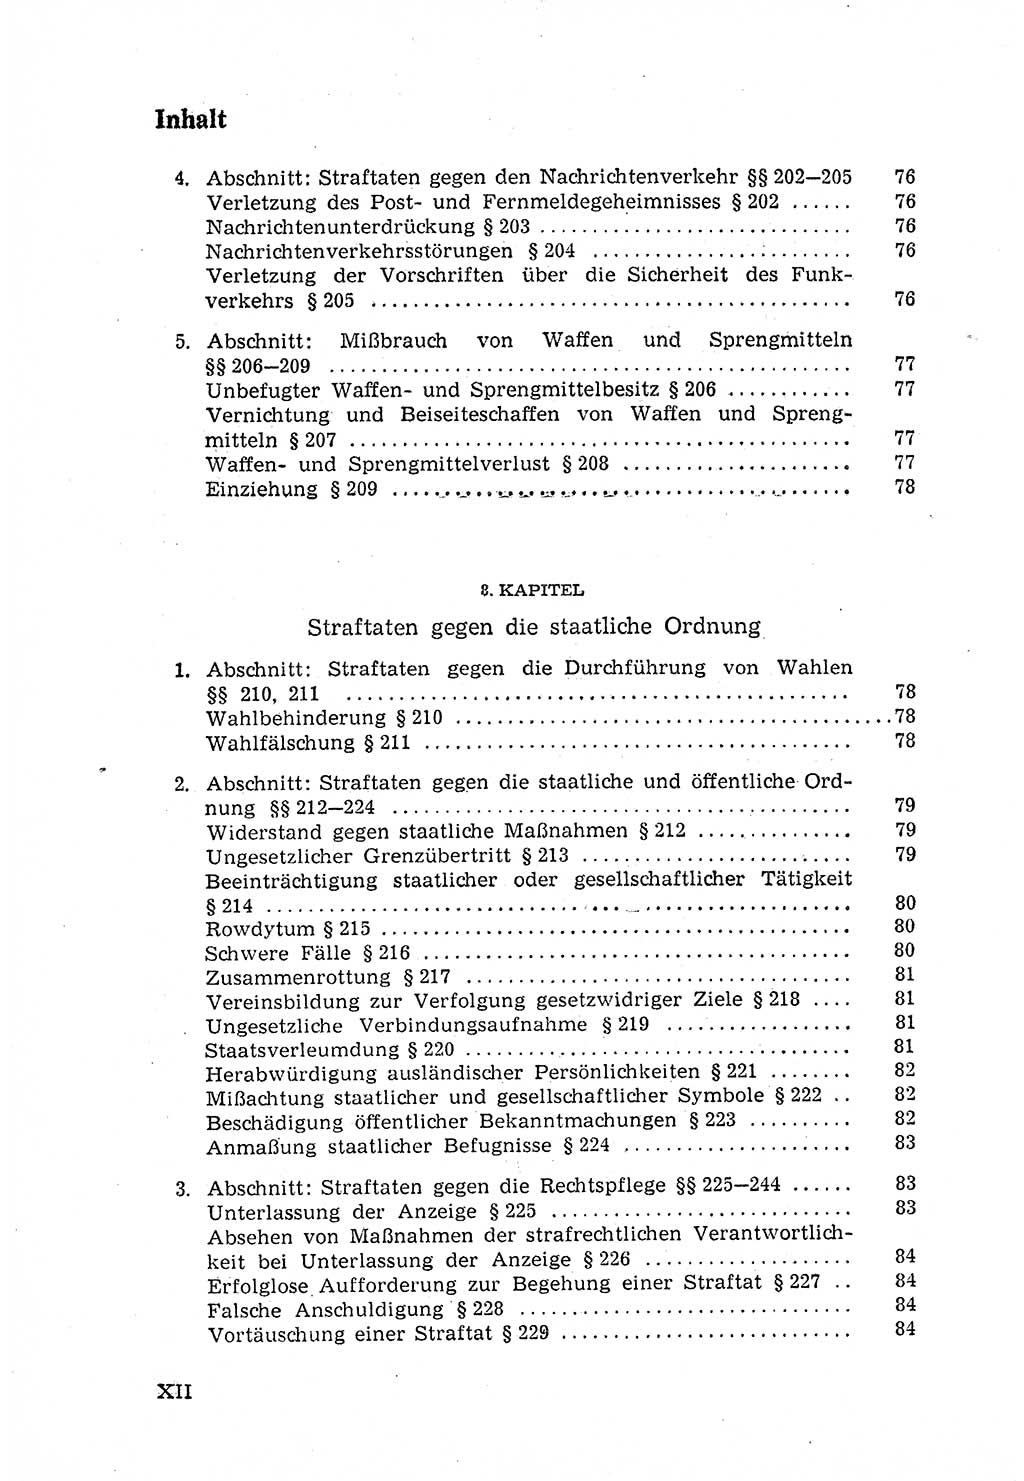 Strafgesetzbuch (StGB) der Deutschen Demokratischen Republik (DDR) 1968, Seite 12 (StGB DDR 1968, S. 12)